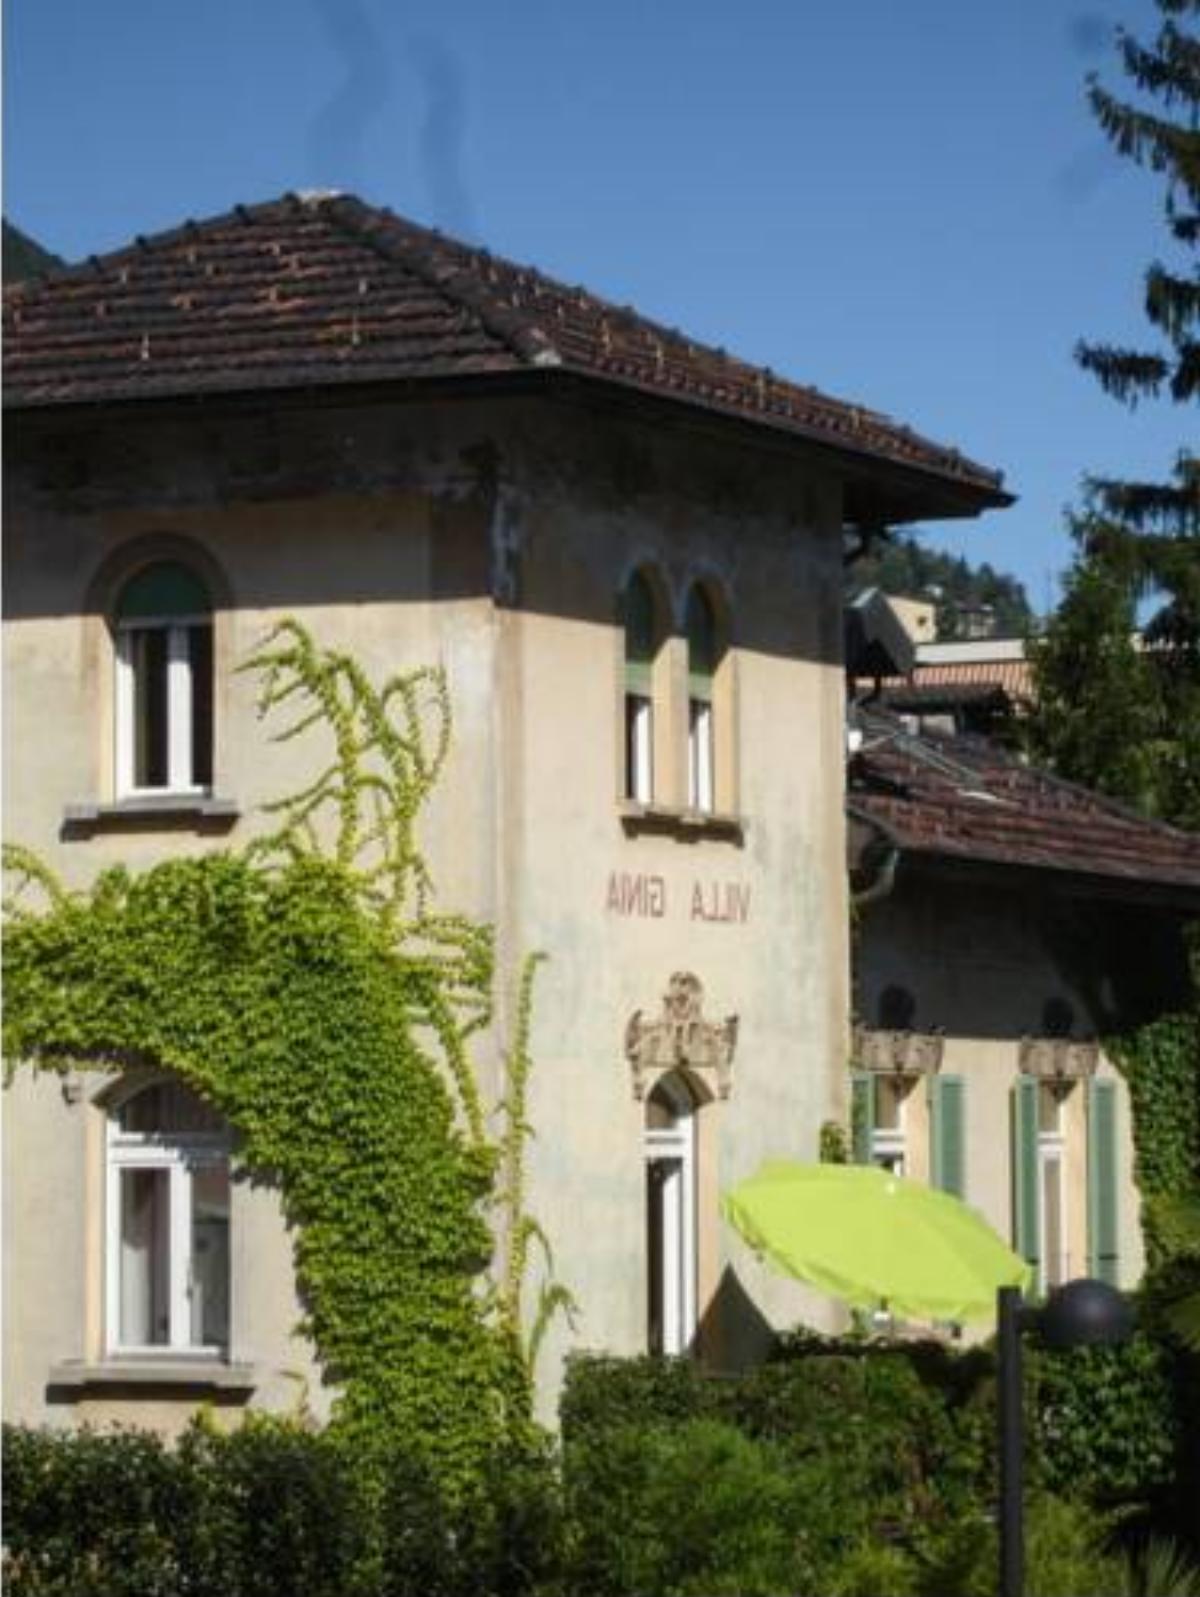 B&B Villa Ginia Hotel Locarno Switzerland